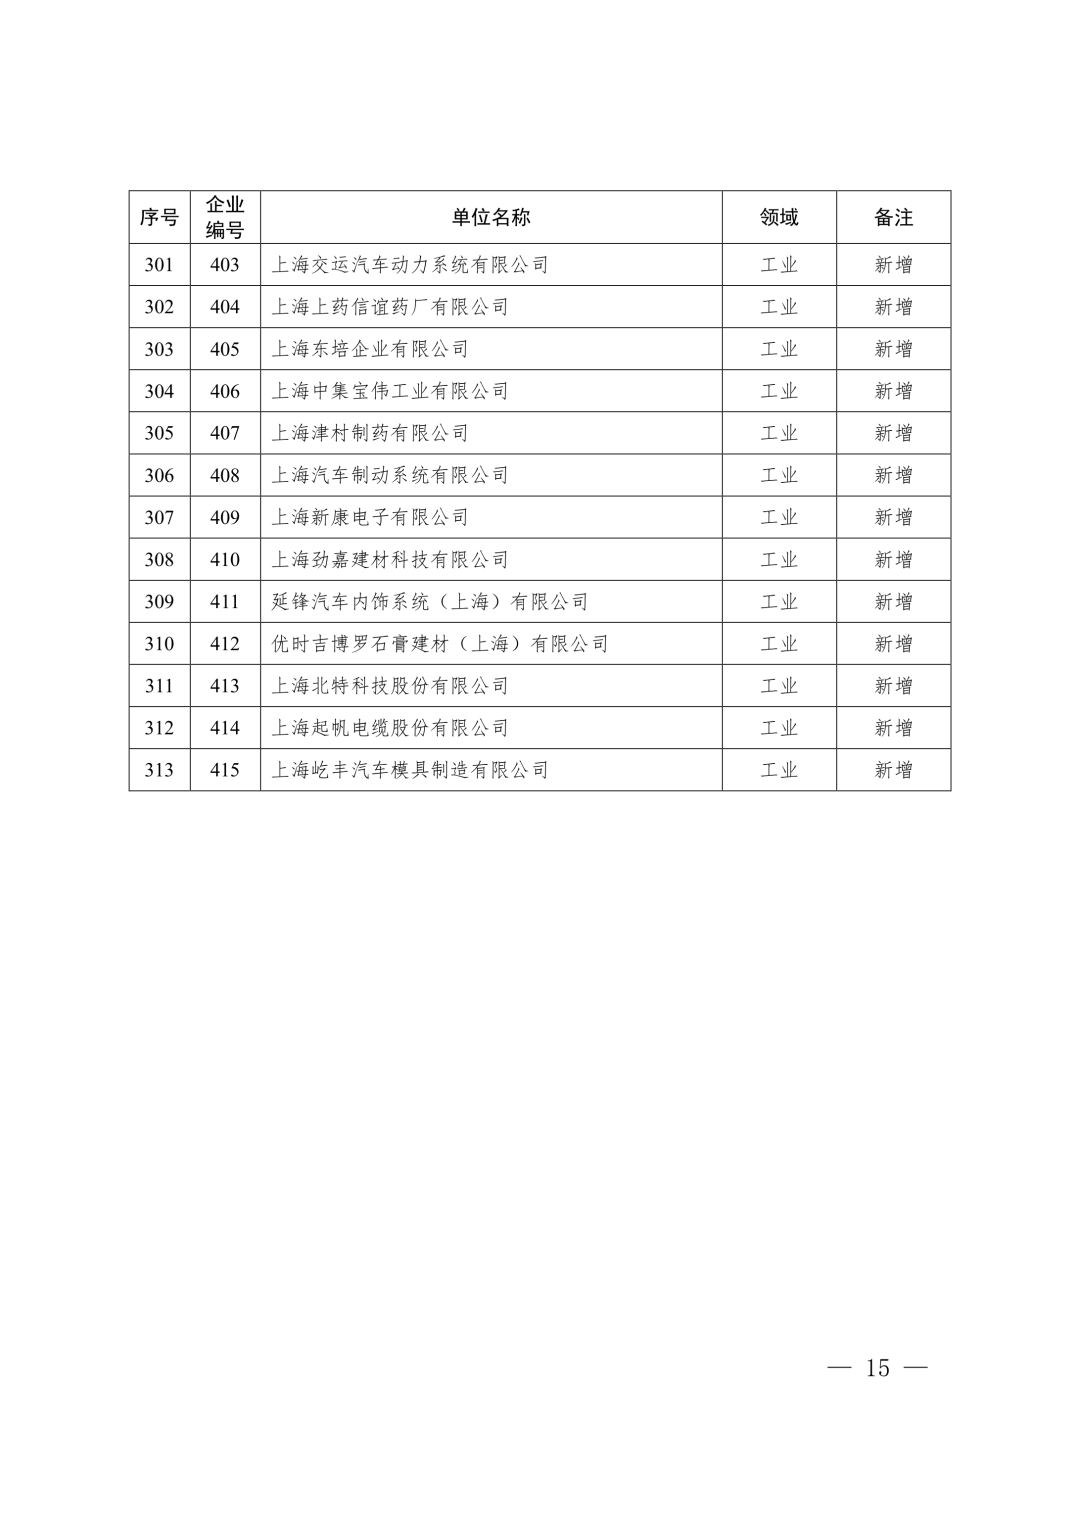 【关注】上海市生态环境局关于印发《上海市纳入碳排放配额管理单位名单（2019版）》及《上海市2019年碳排放配额分配方案》的通知(图15)